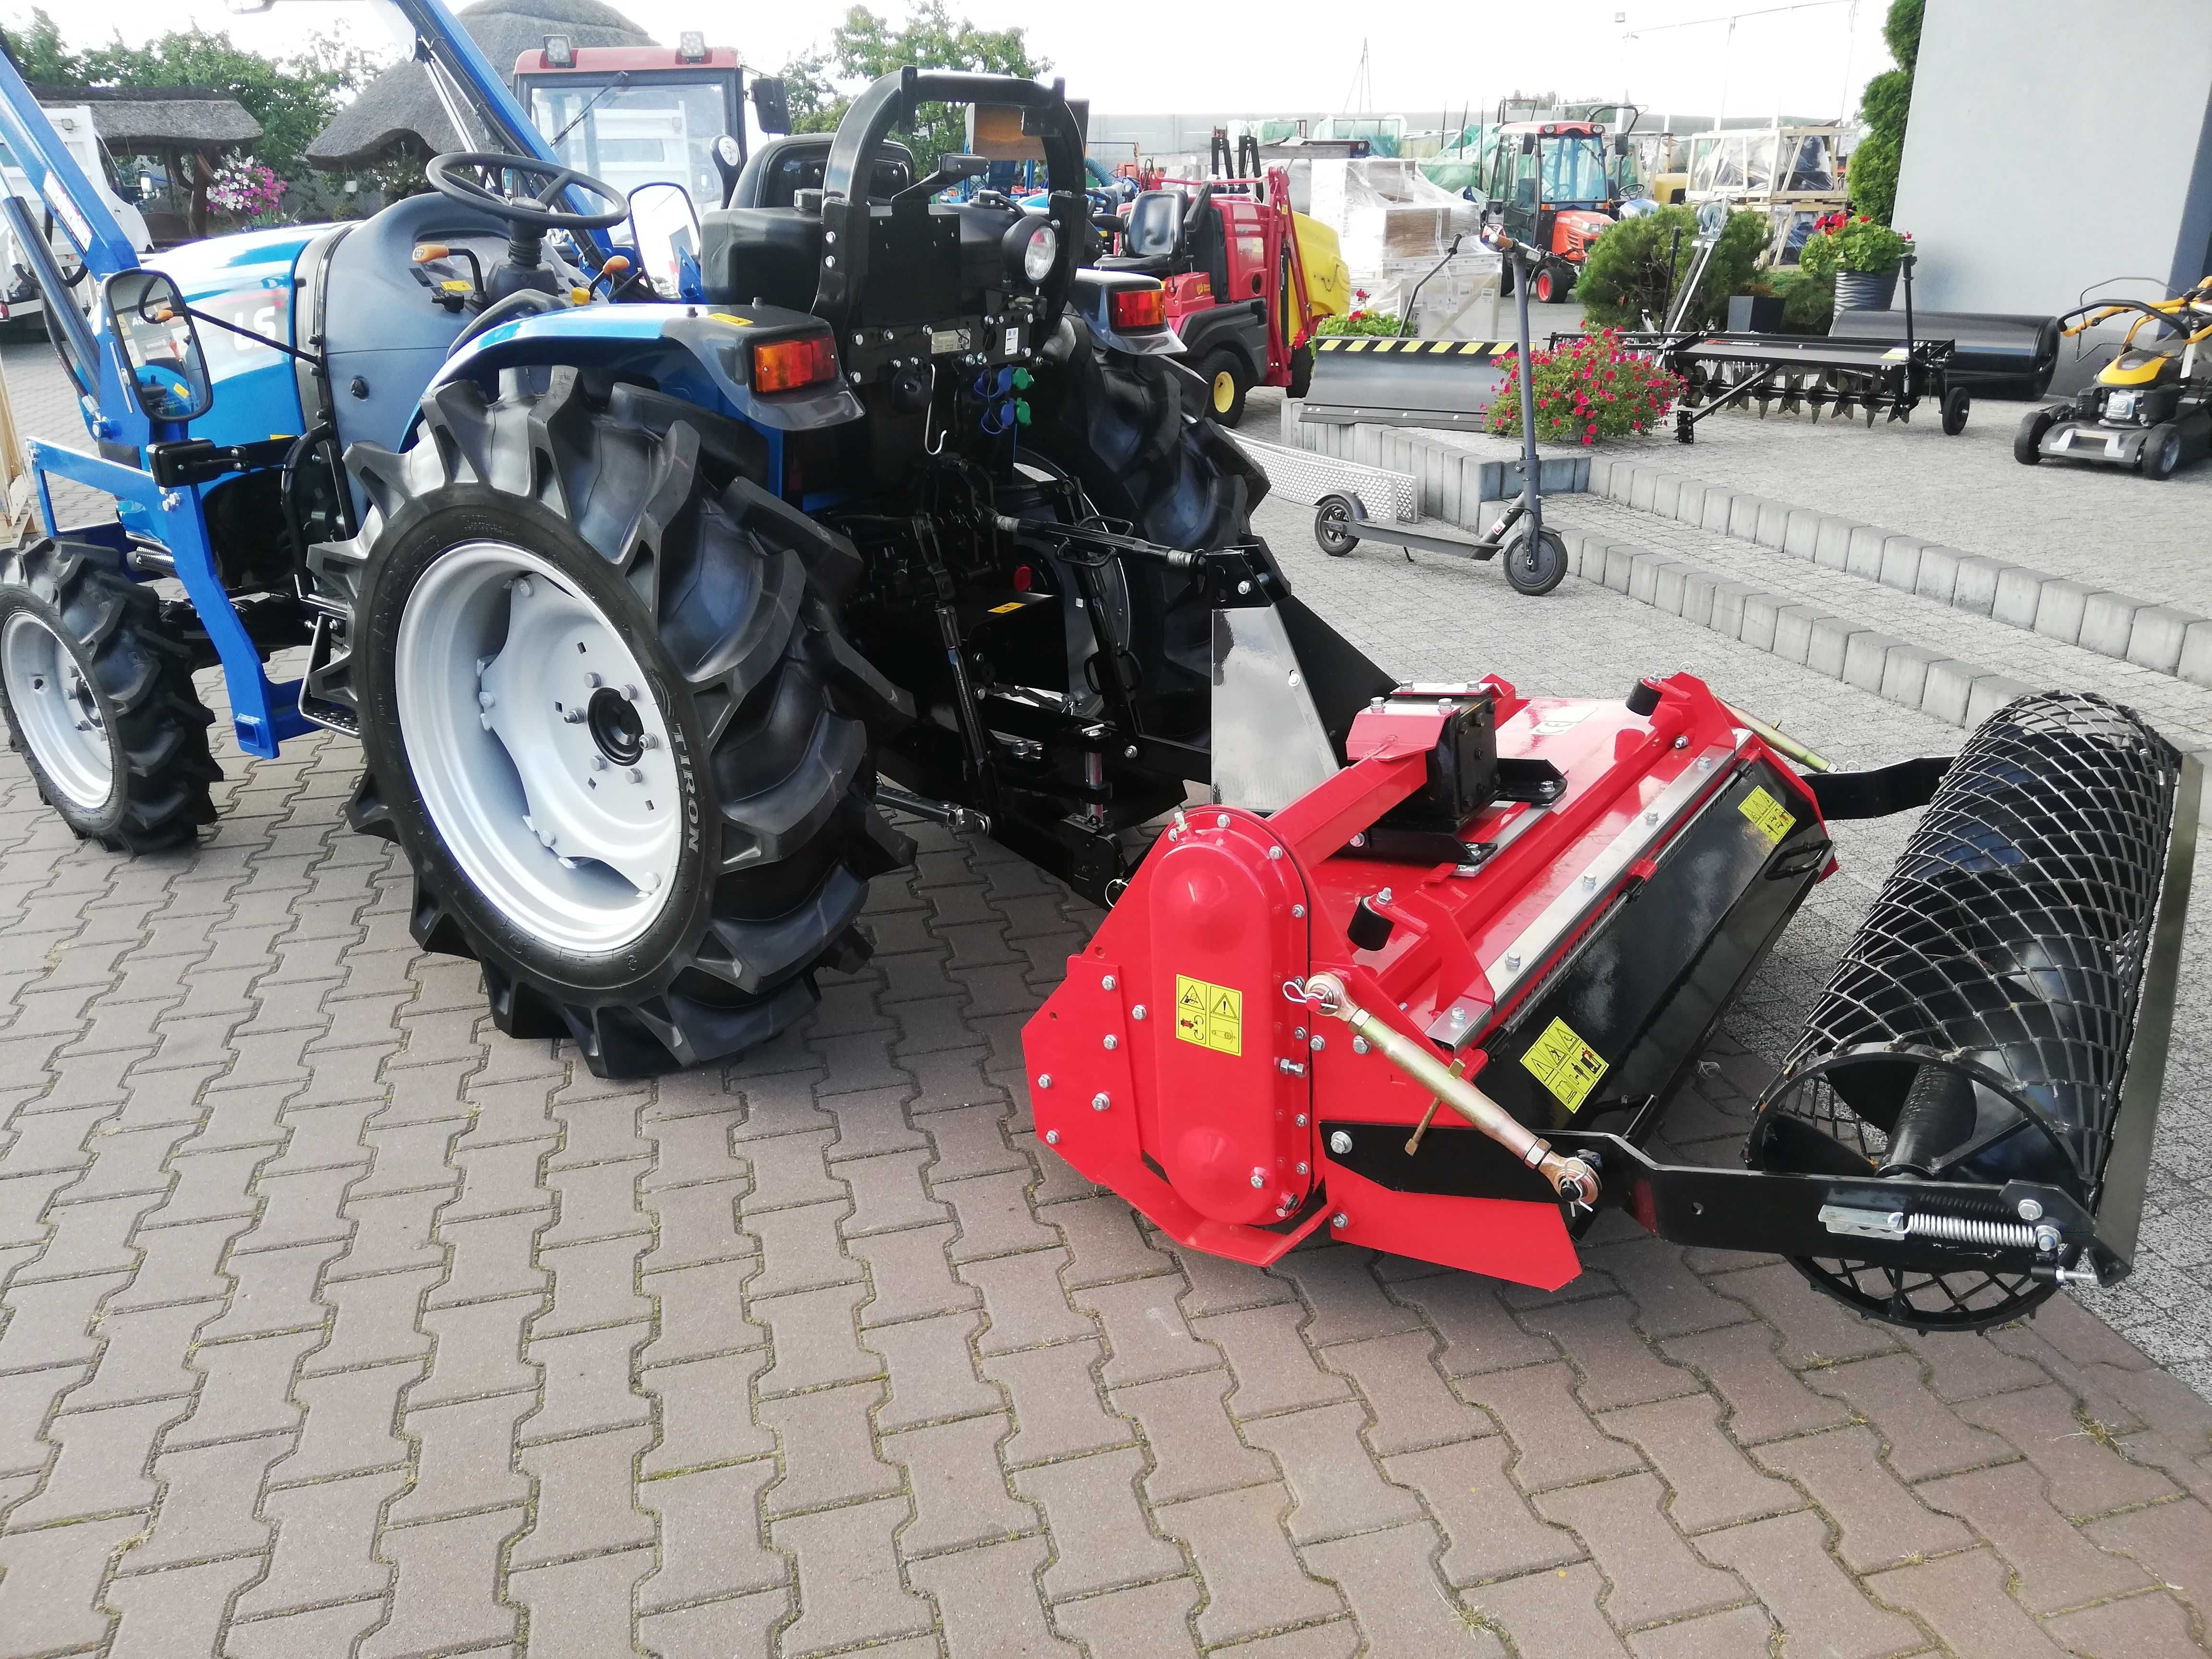 Nowy traktor ciągnik LS MT3.40 4x4 moc 40KM+ładowacz+separacyjna 145cm